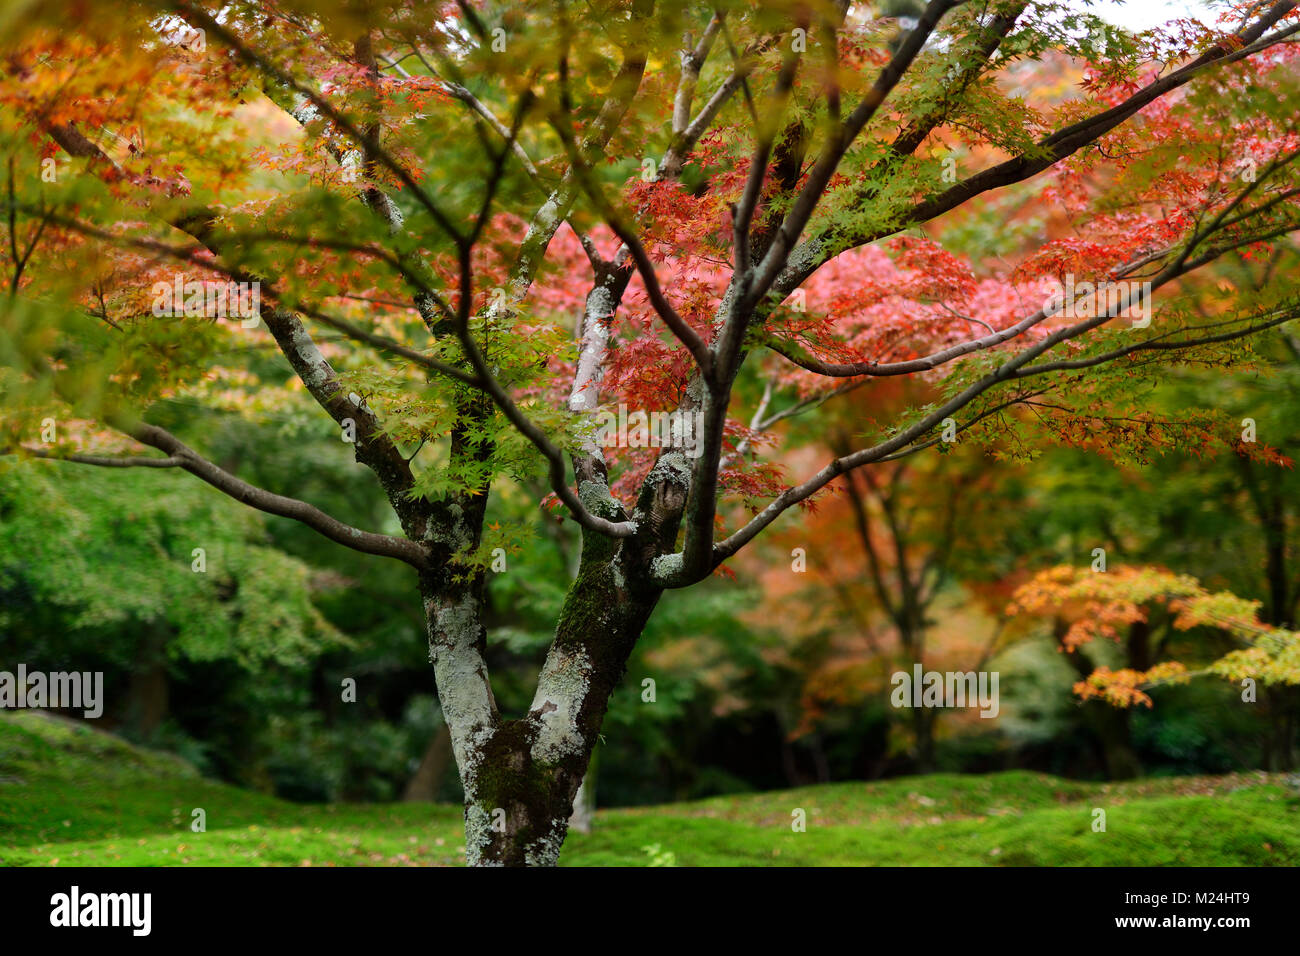 Bunten japanischen Ahorn Baum in einem schönen bemoosten Herbst Natur Landschaft in einem Garten an Tofuku-ji, Kyoto, Japan Stockfoto